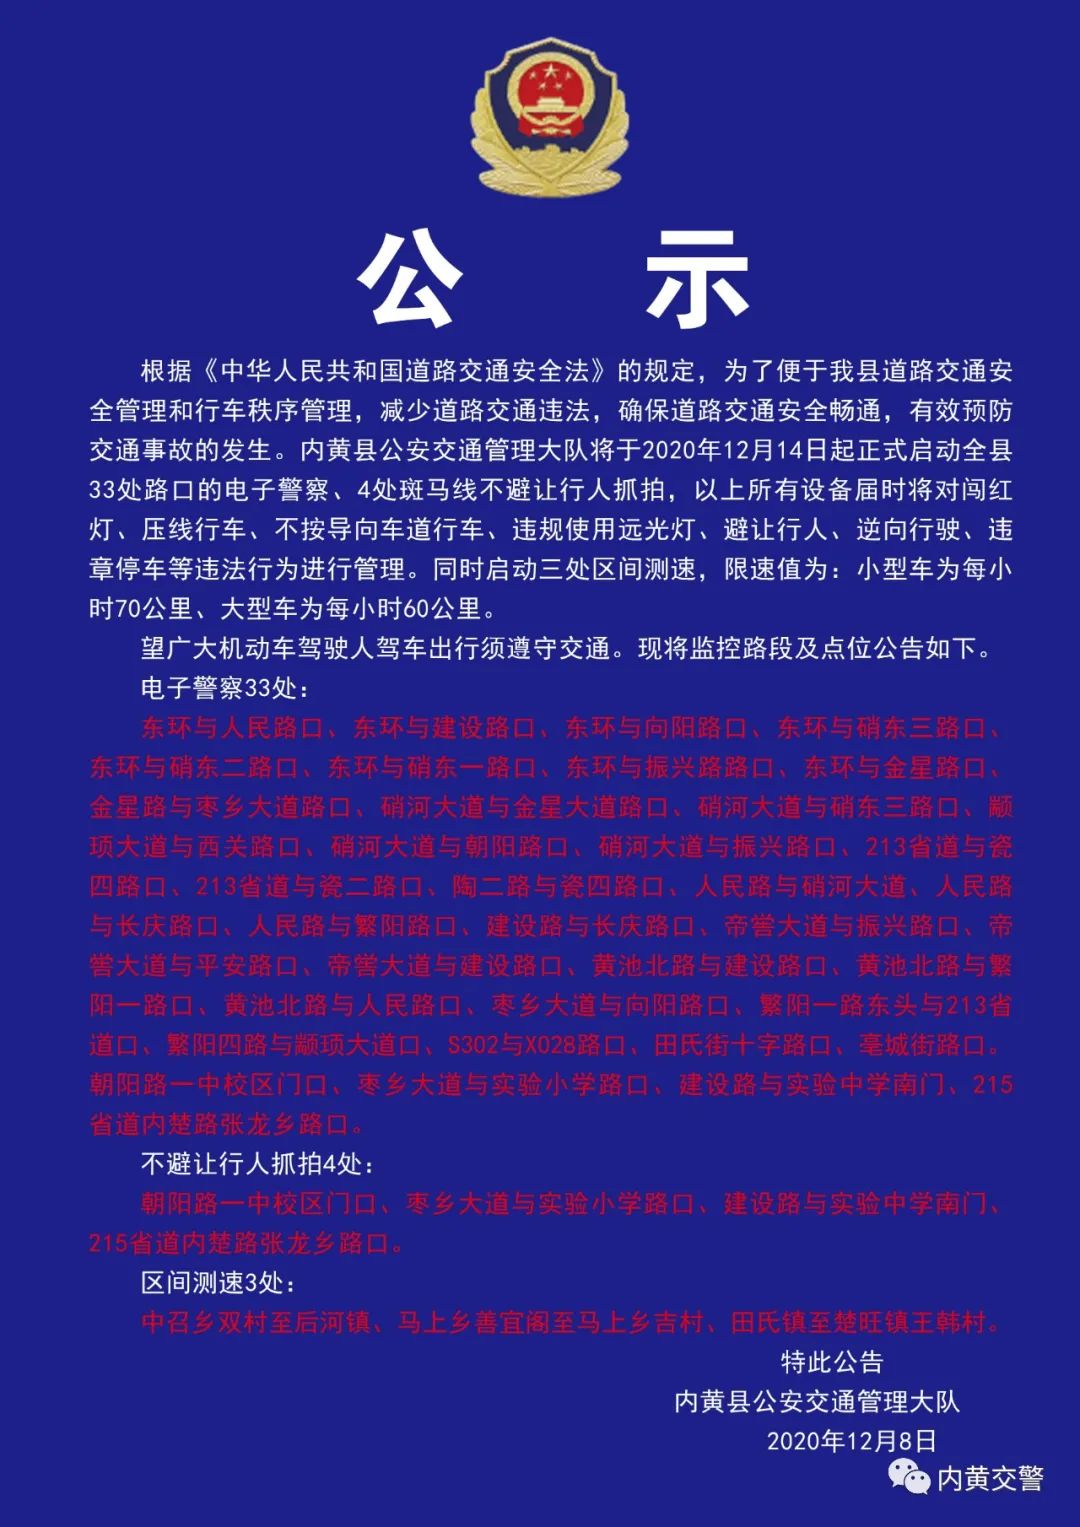 原标题 关于内黄县辖区新增电子警察抓拍的公告